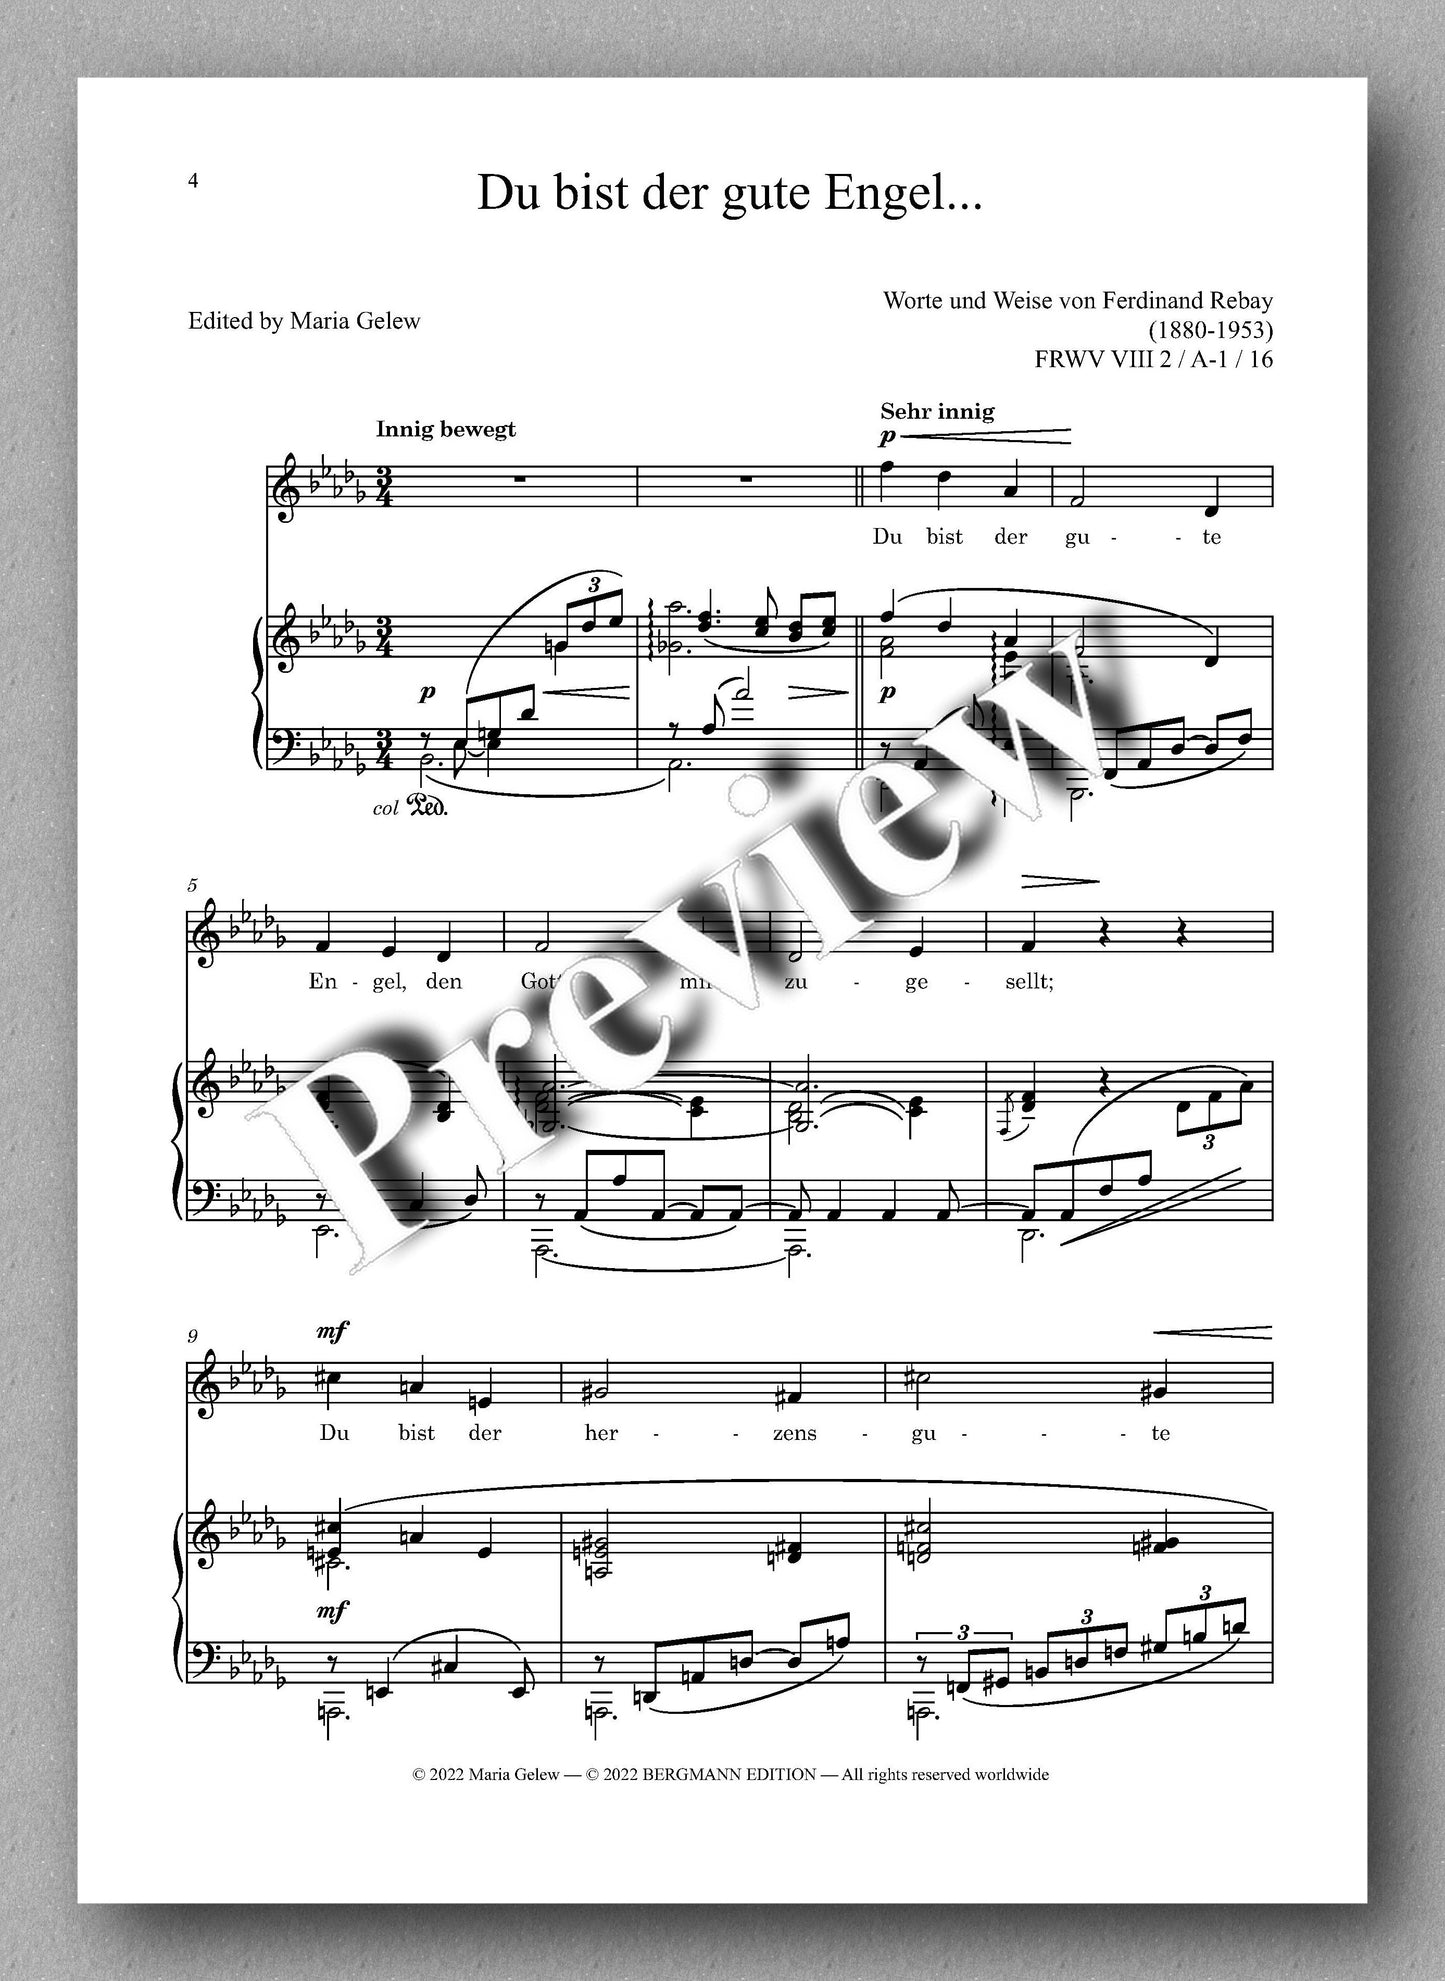 Ferdinand Rebay, Lieder nach eigenen Texten (1930-1950) - preview of the Music score 1